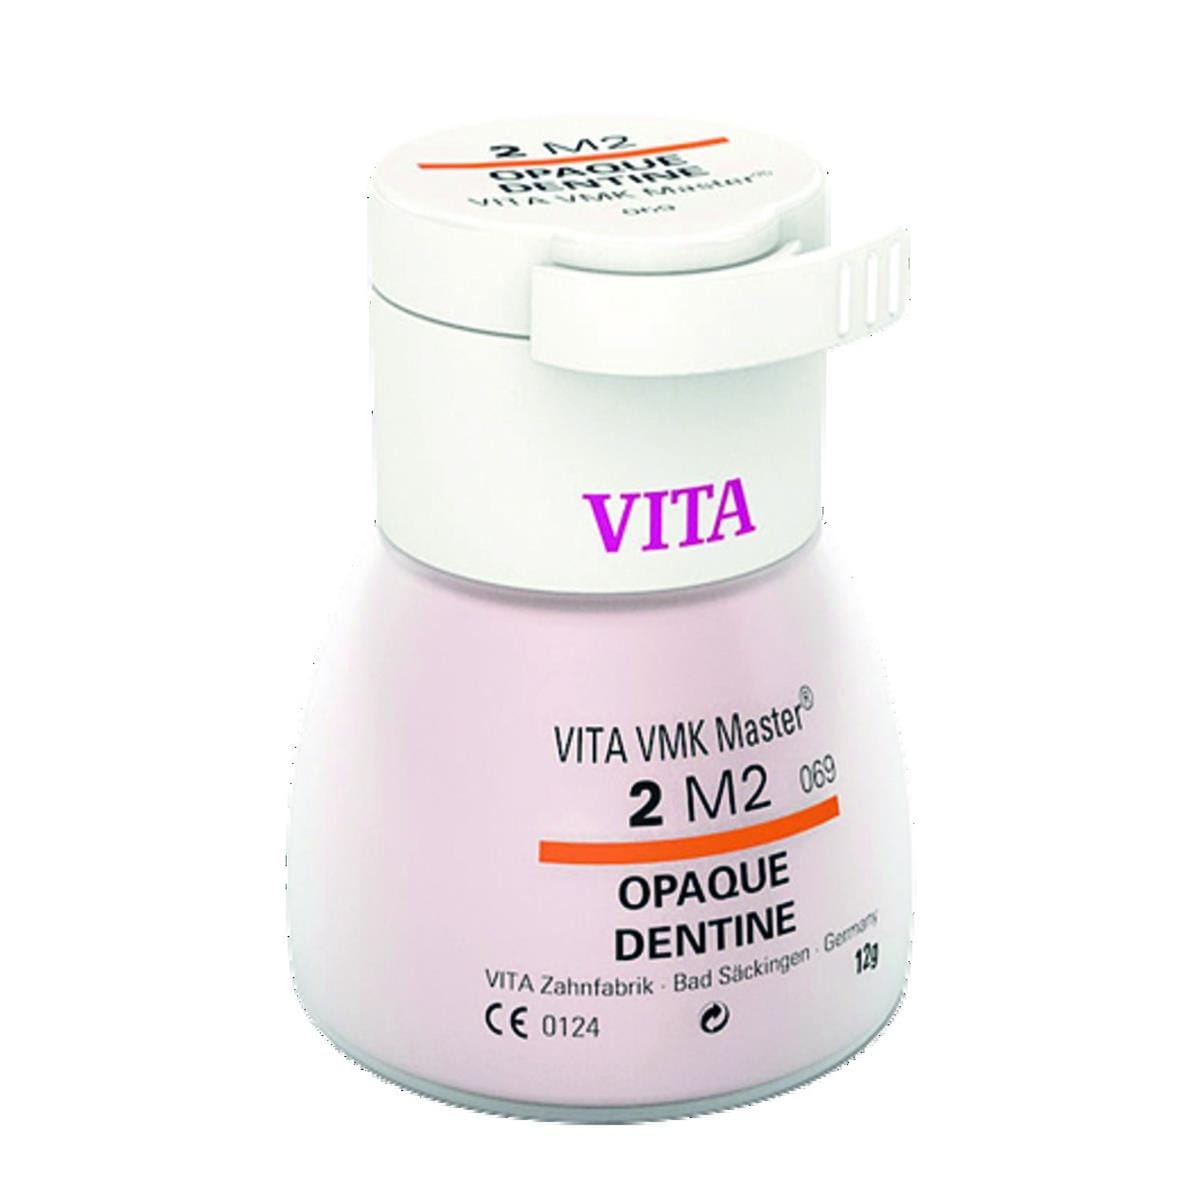 VMK Master VITA - Dentine Opaque - 4L1,5 - Le flacon de 12 g